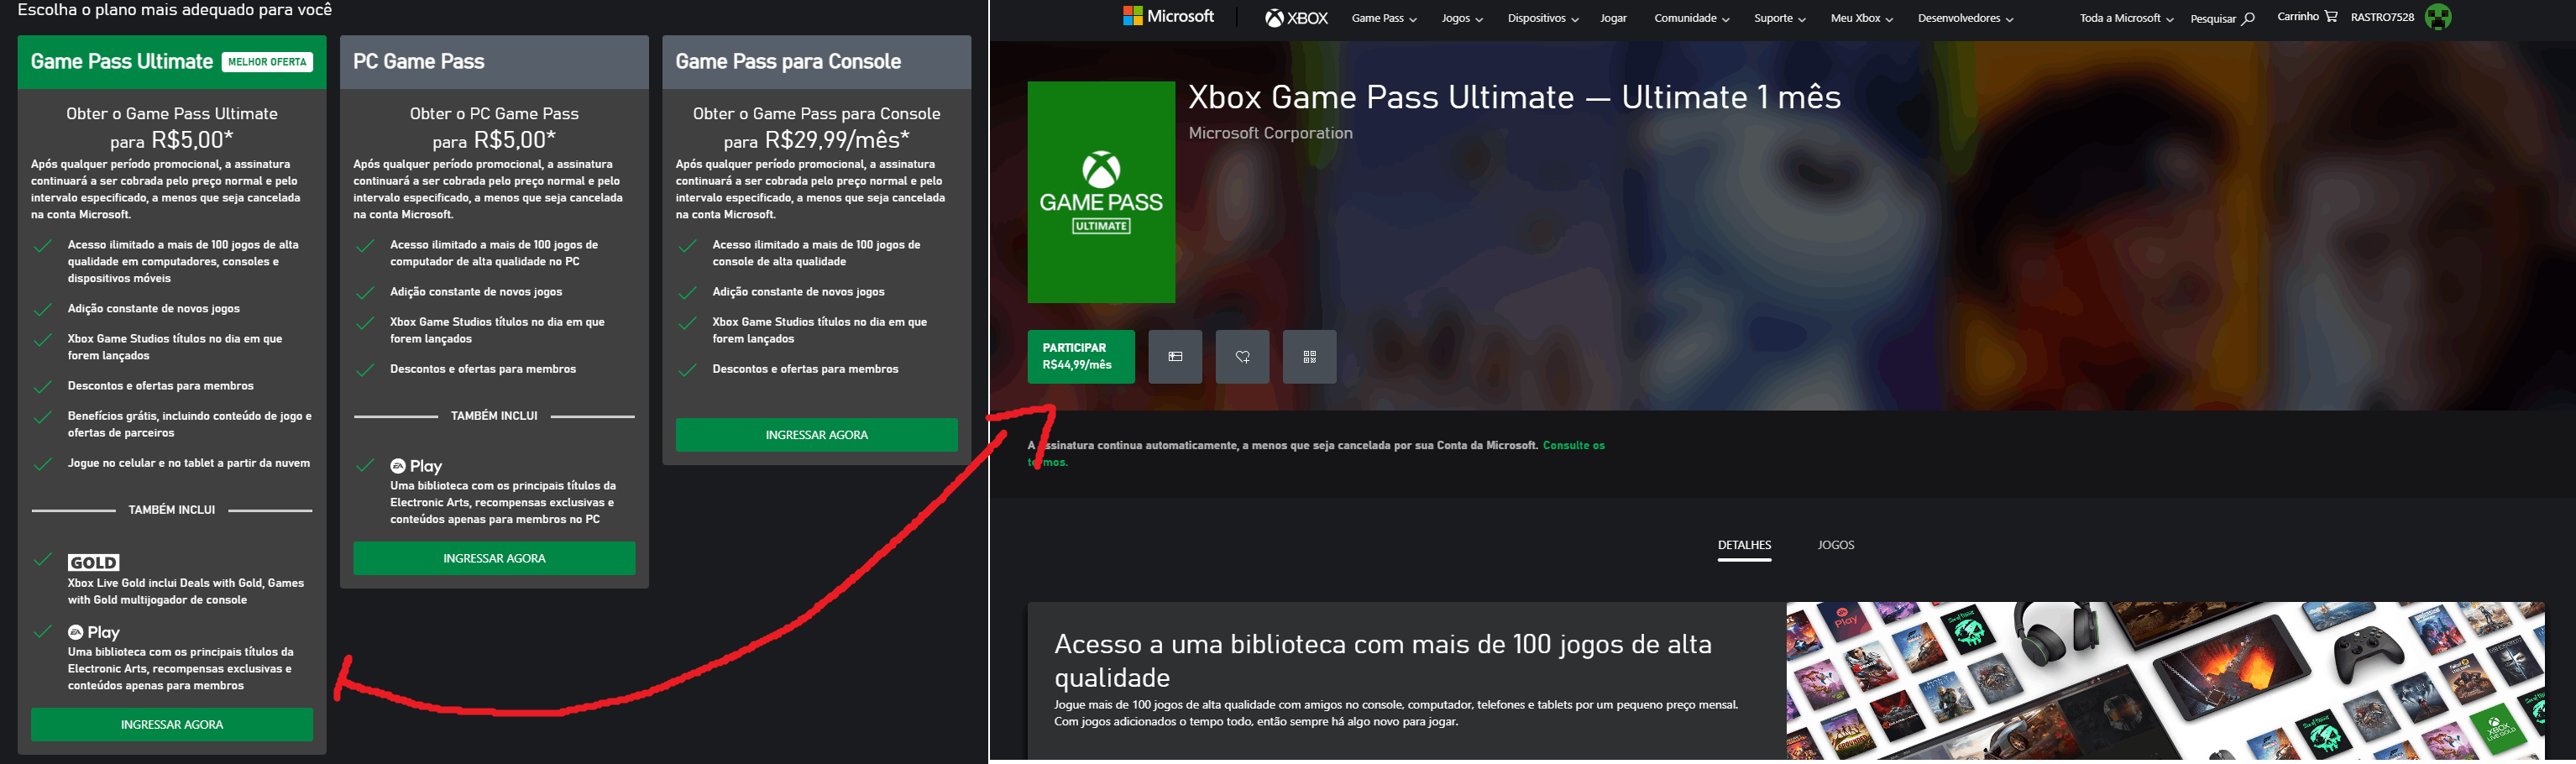 Promoção de R$5 do Game Pass Ultimate está de volta, conheça todas as  novidades